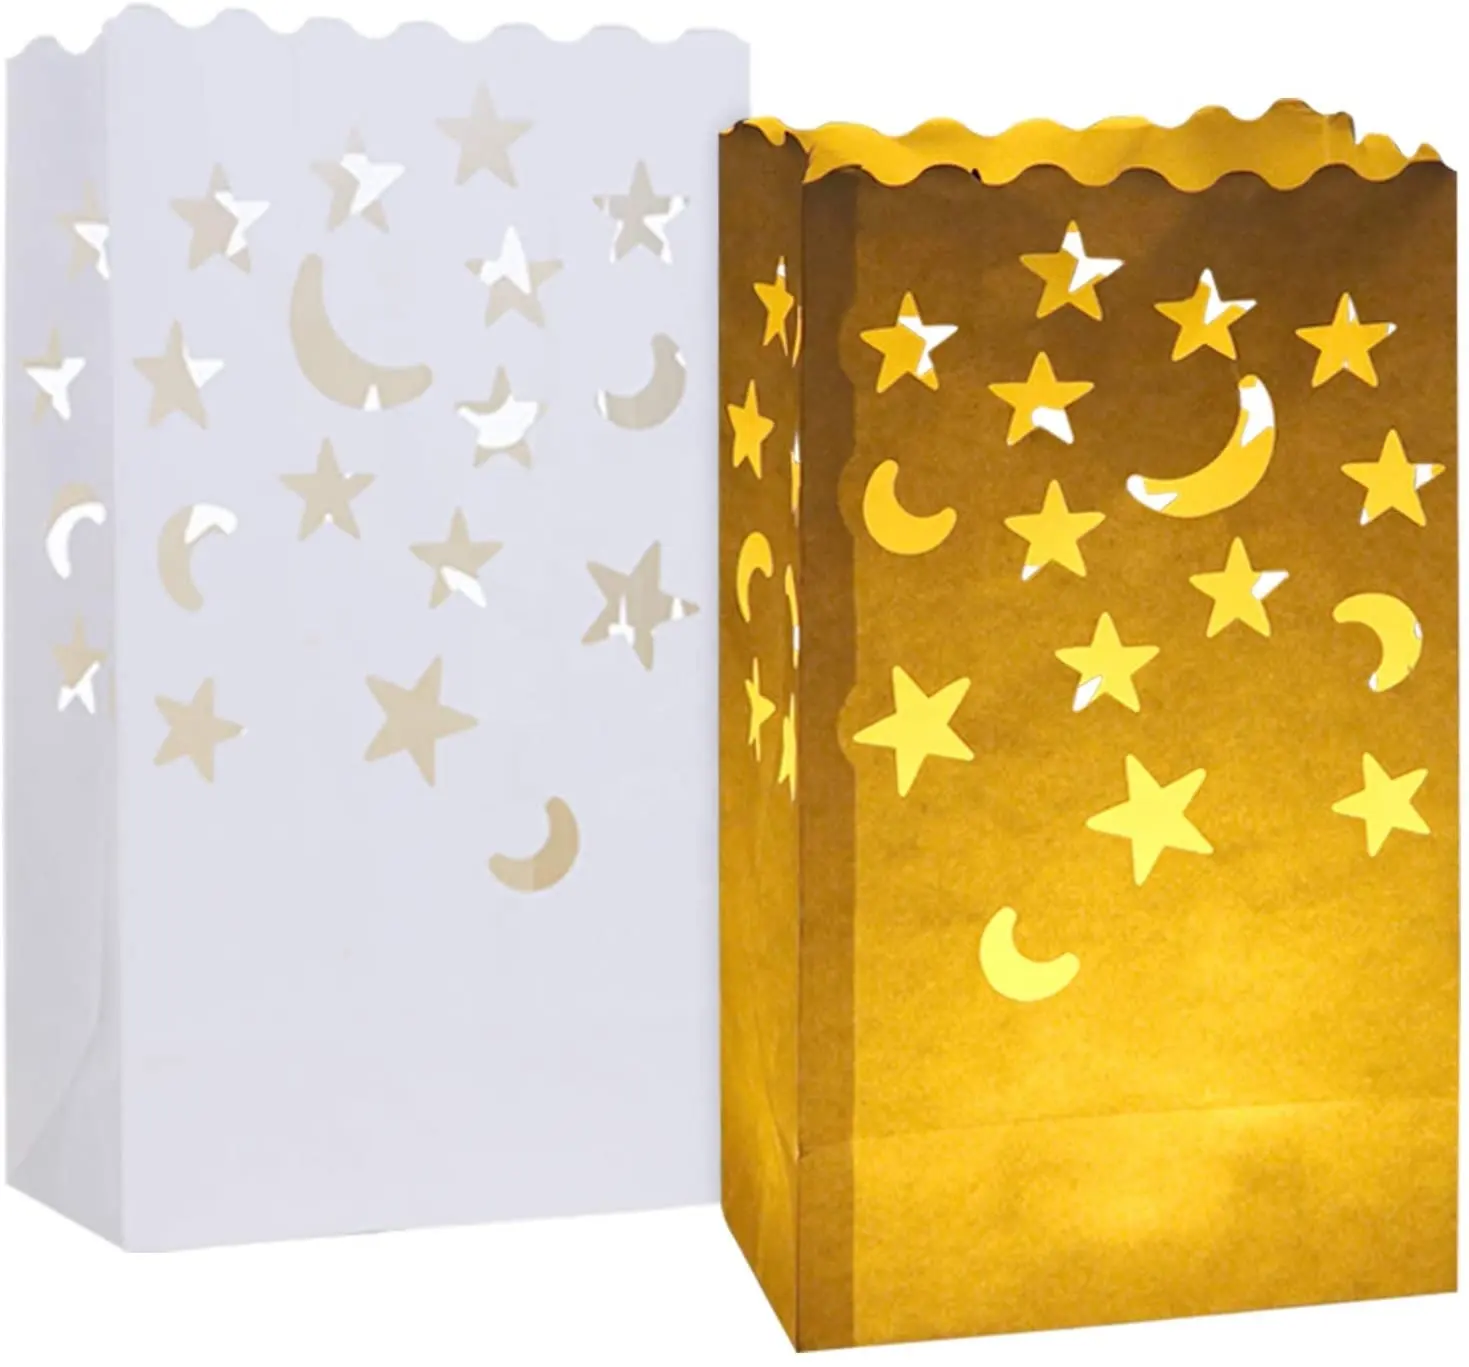 Lanternes blanches en papier ignifuge, 60 pièces, papier réutilisable, résistantes, bougie spéciale, sacs à bougies avec étoiles, lune